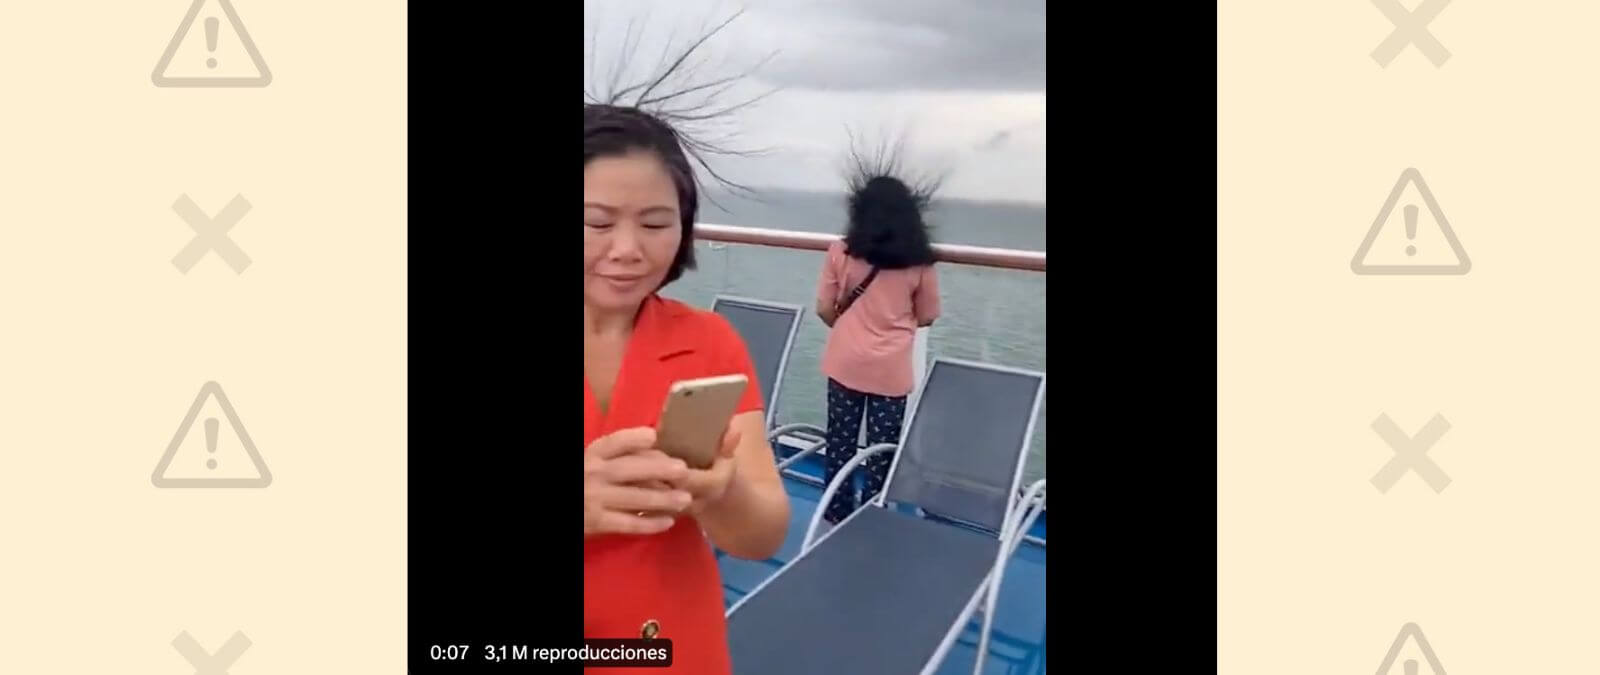 Sí, el pelo se te puede elevar durante una tormenta eléctrica, como se ve en este vídeo, si existe el riesgo de que caiga un rayo cerca